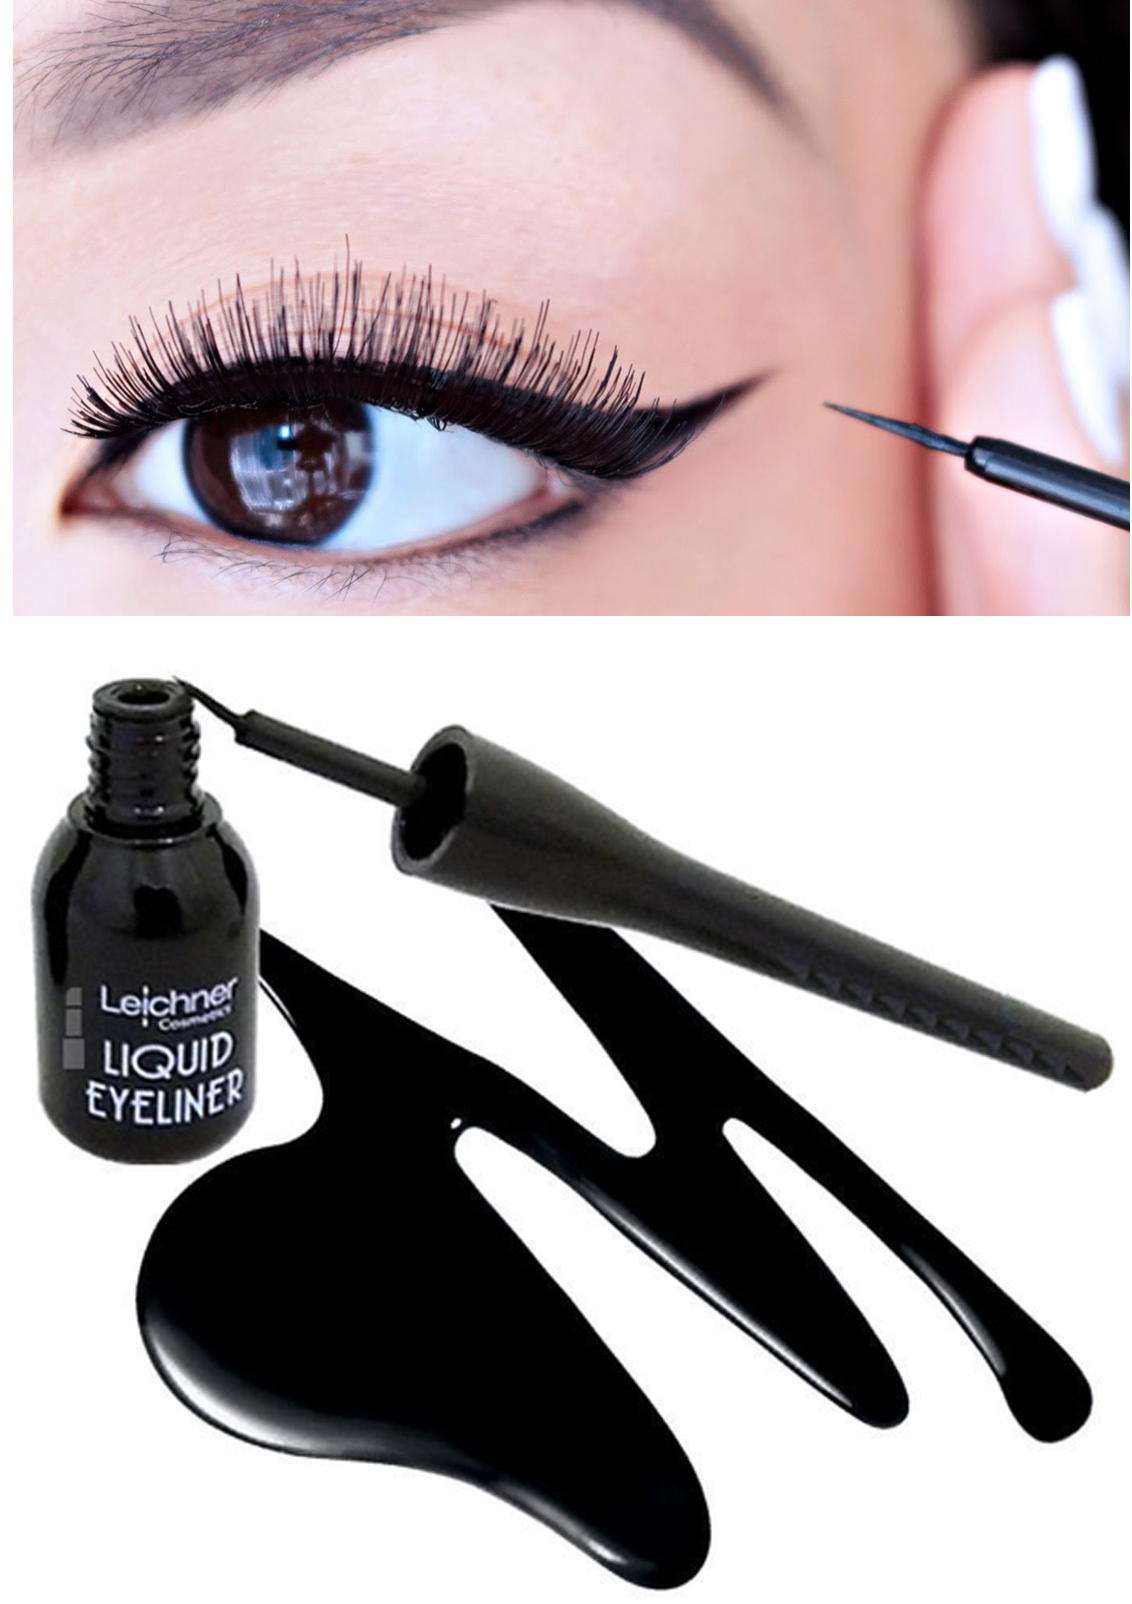 Leichner Precision & Definition Liquid Eyeliner - Black